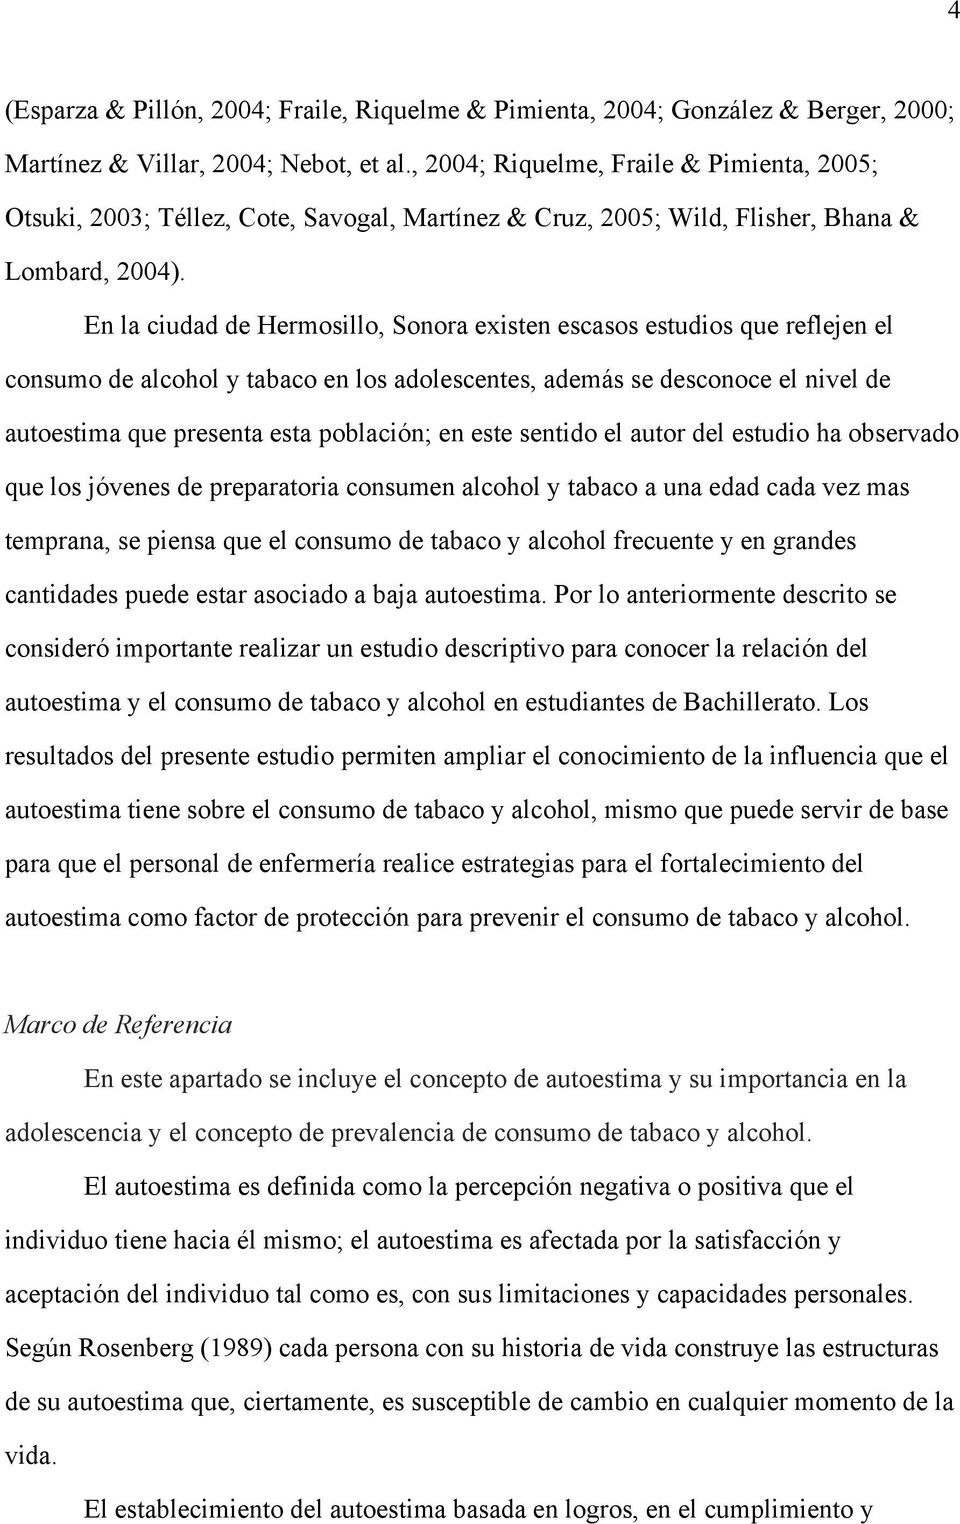 En la ciudad de Hermosillo, Sonora existen escasos estudios que reflejen el consumo de alcohol y tabaco en los adolescentes, además se desconoce el nivel de autoestima que presenta esta población; en